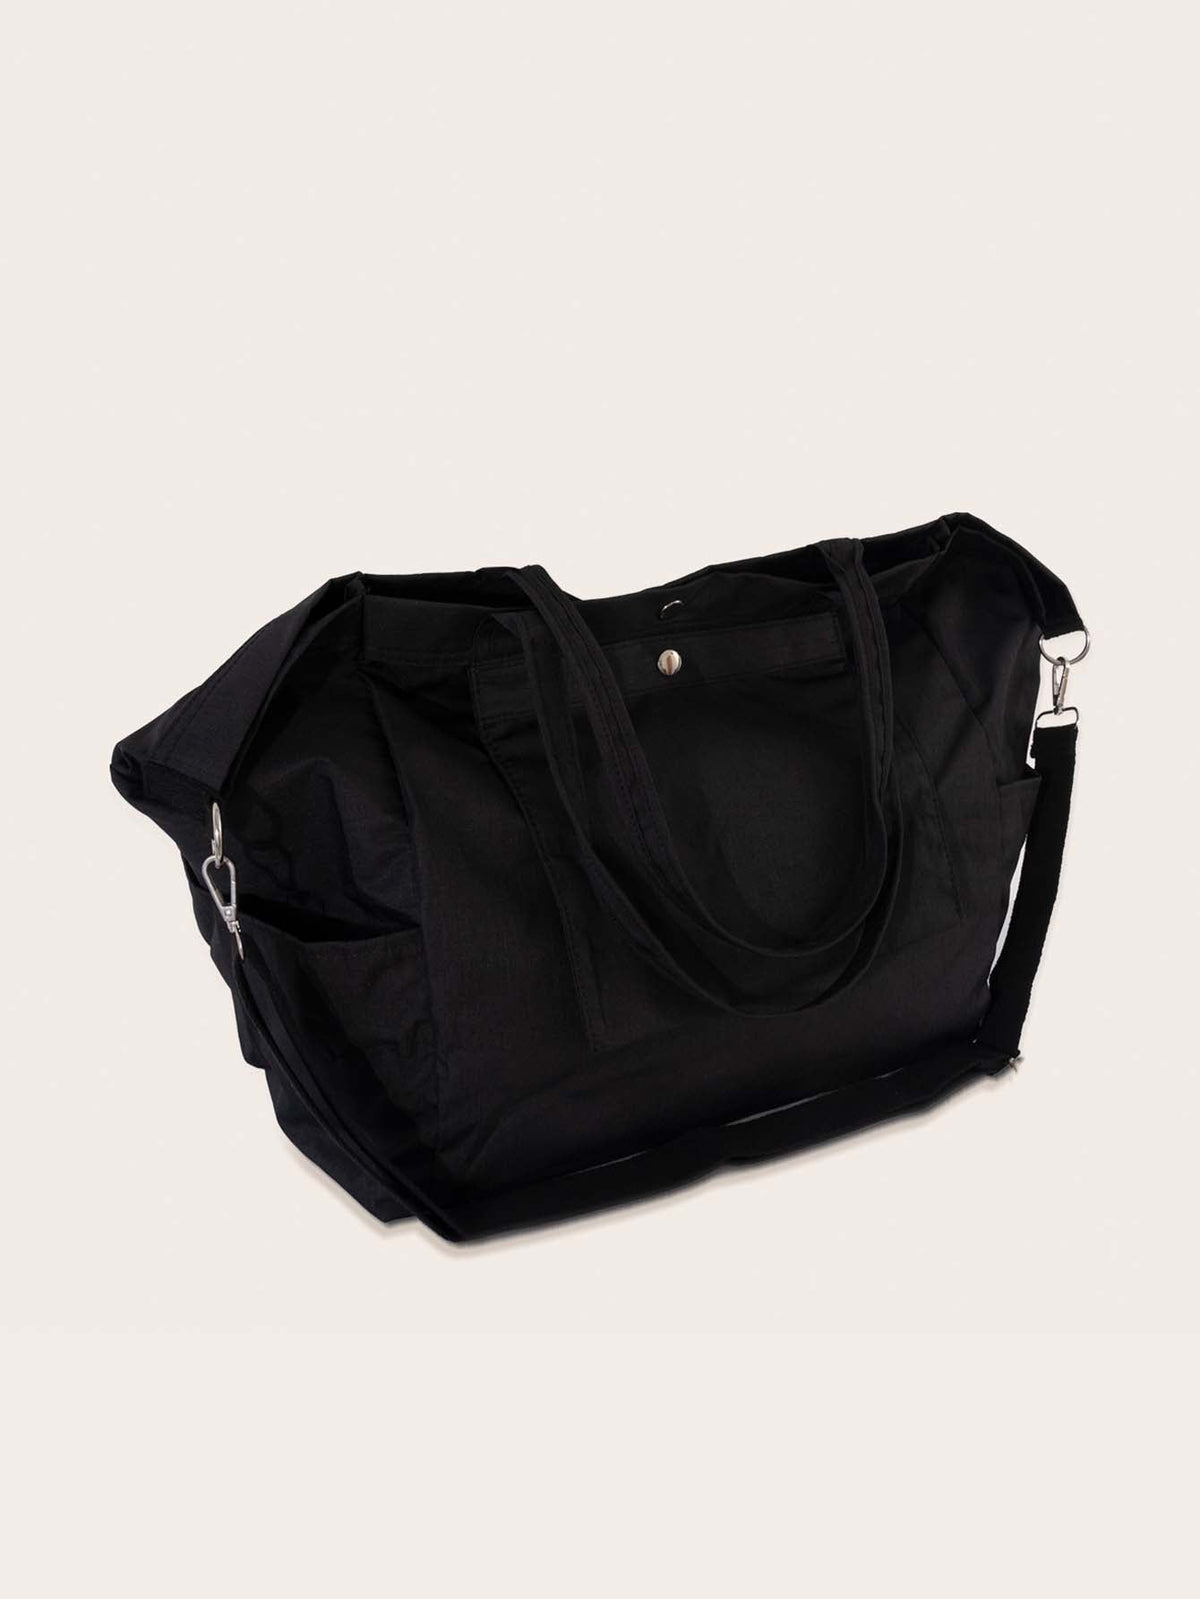 Multifunctional Large Capacity Tote Bags Sai Feel